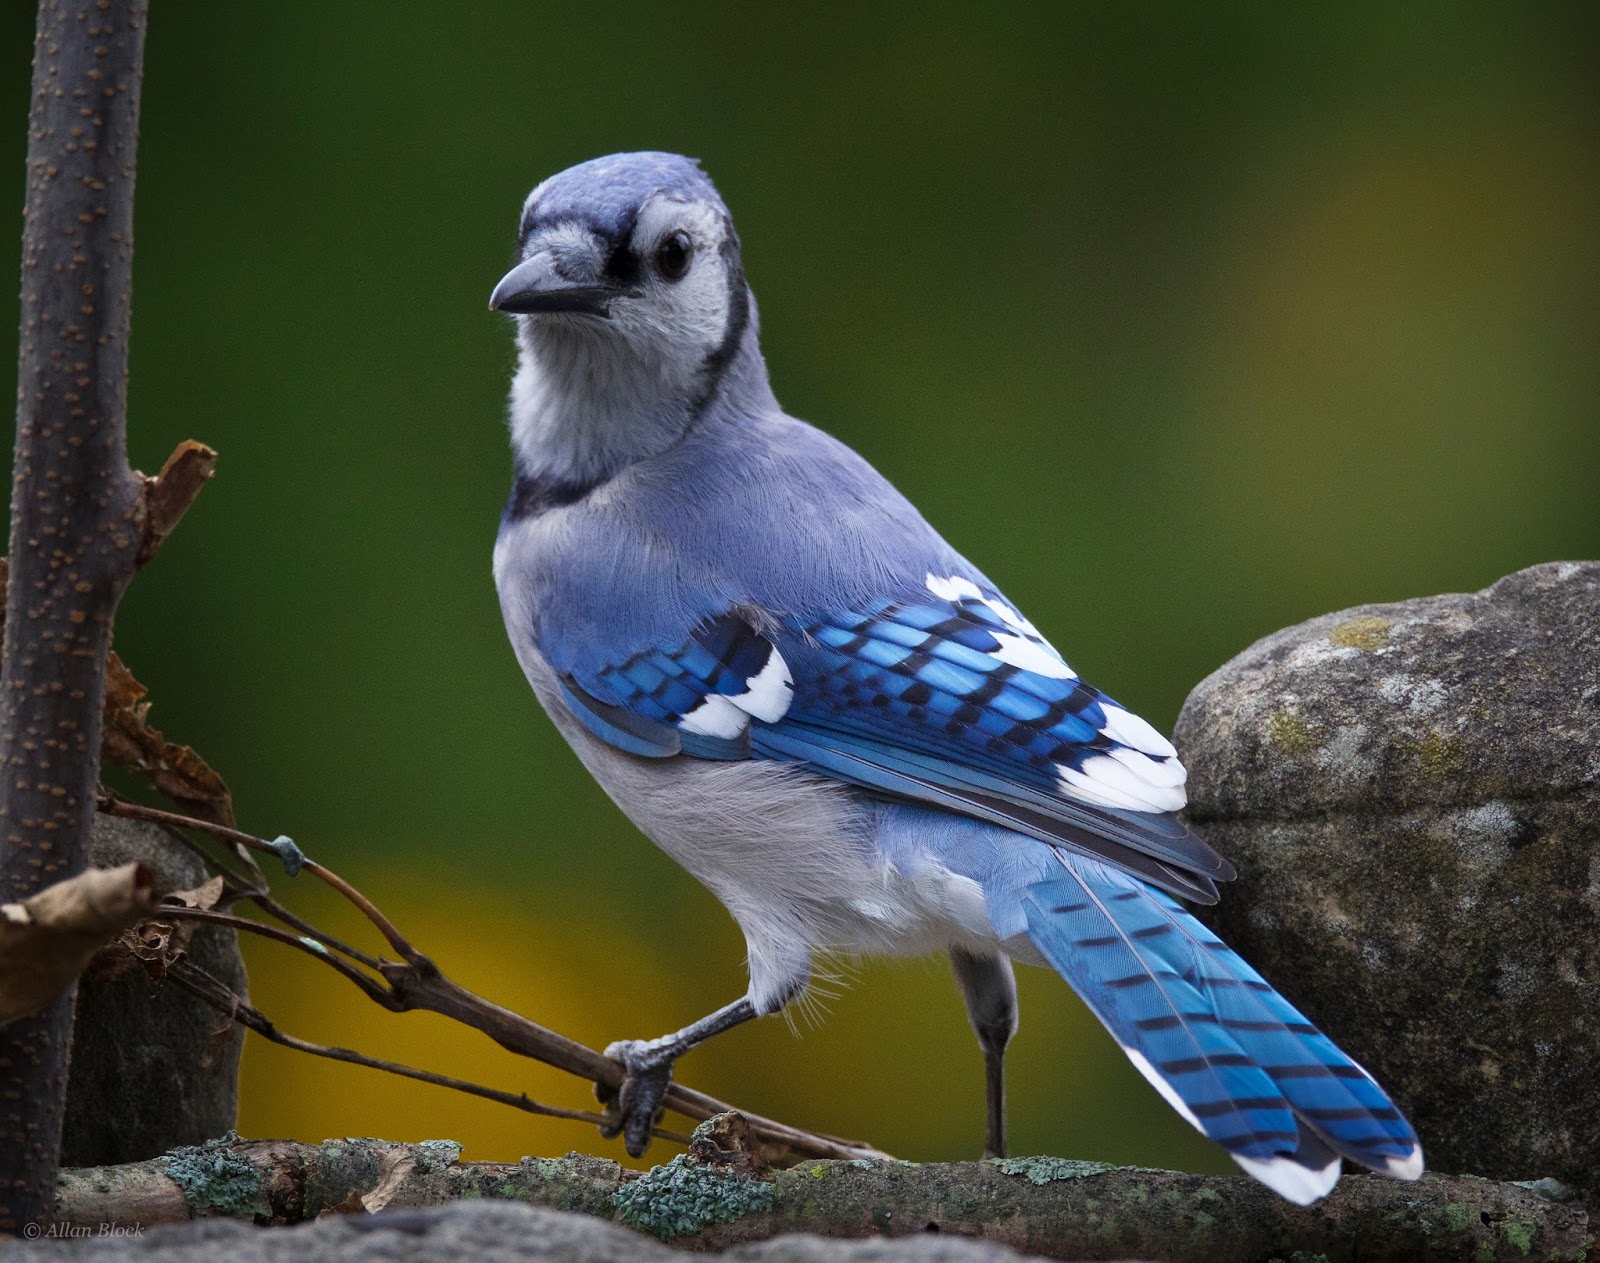 Blue Jay Ptak Dzikiej Przyrody Darmowe zdjęcie na Pixabay Pixabay